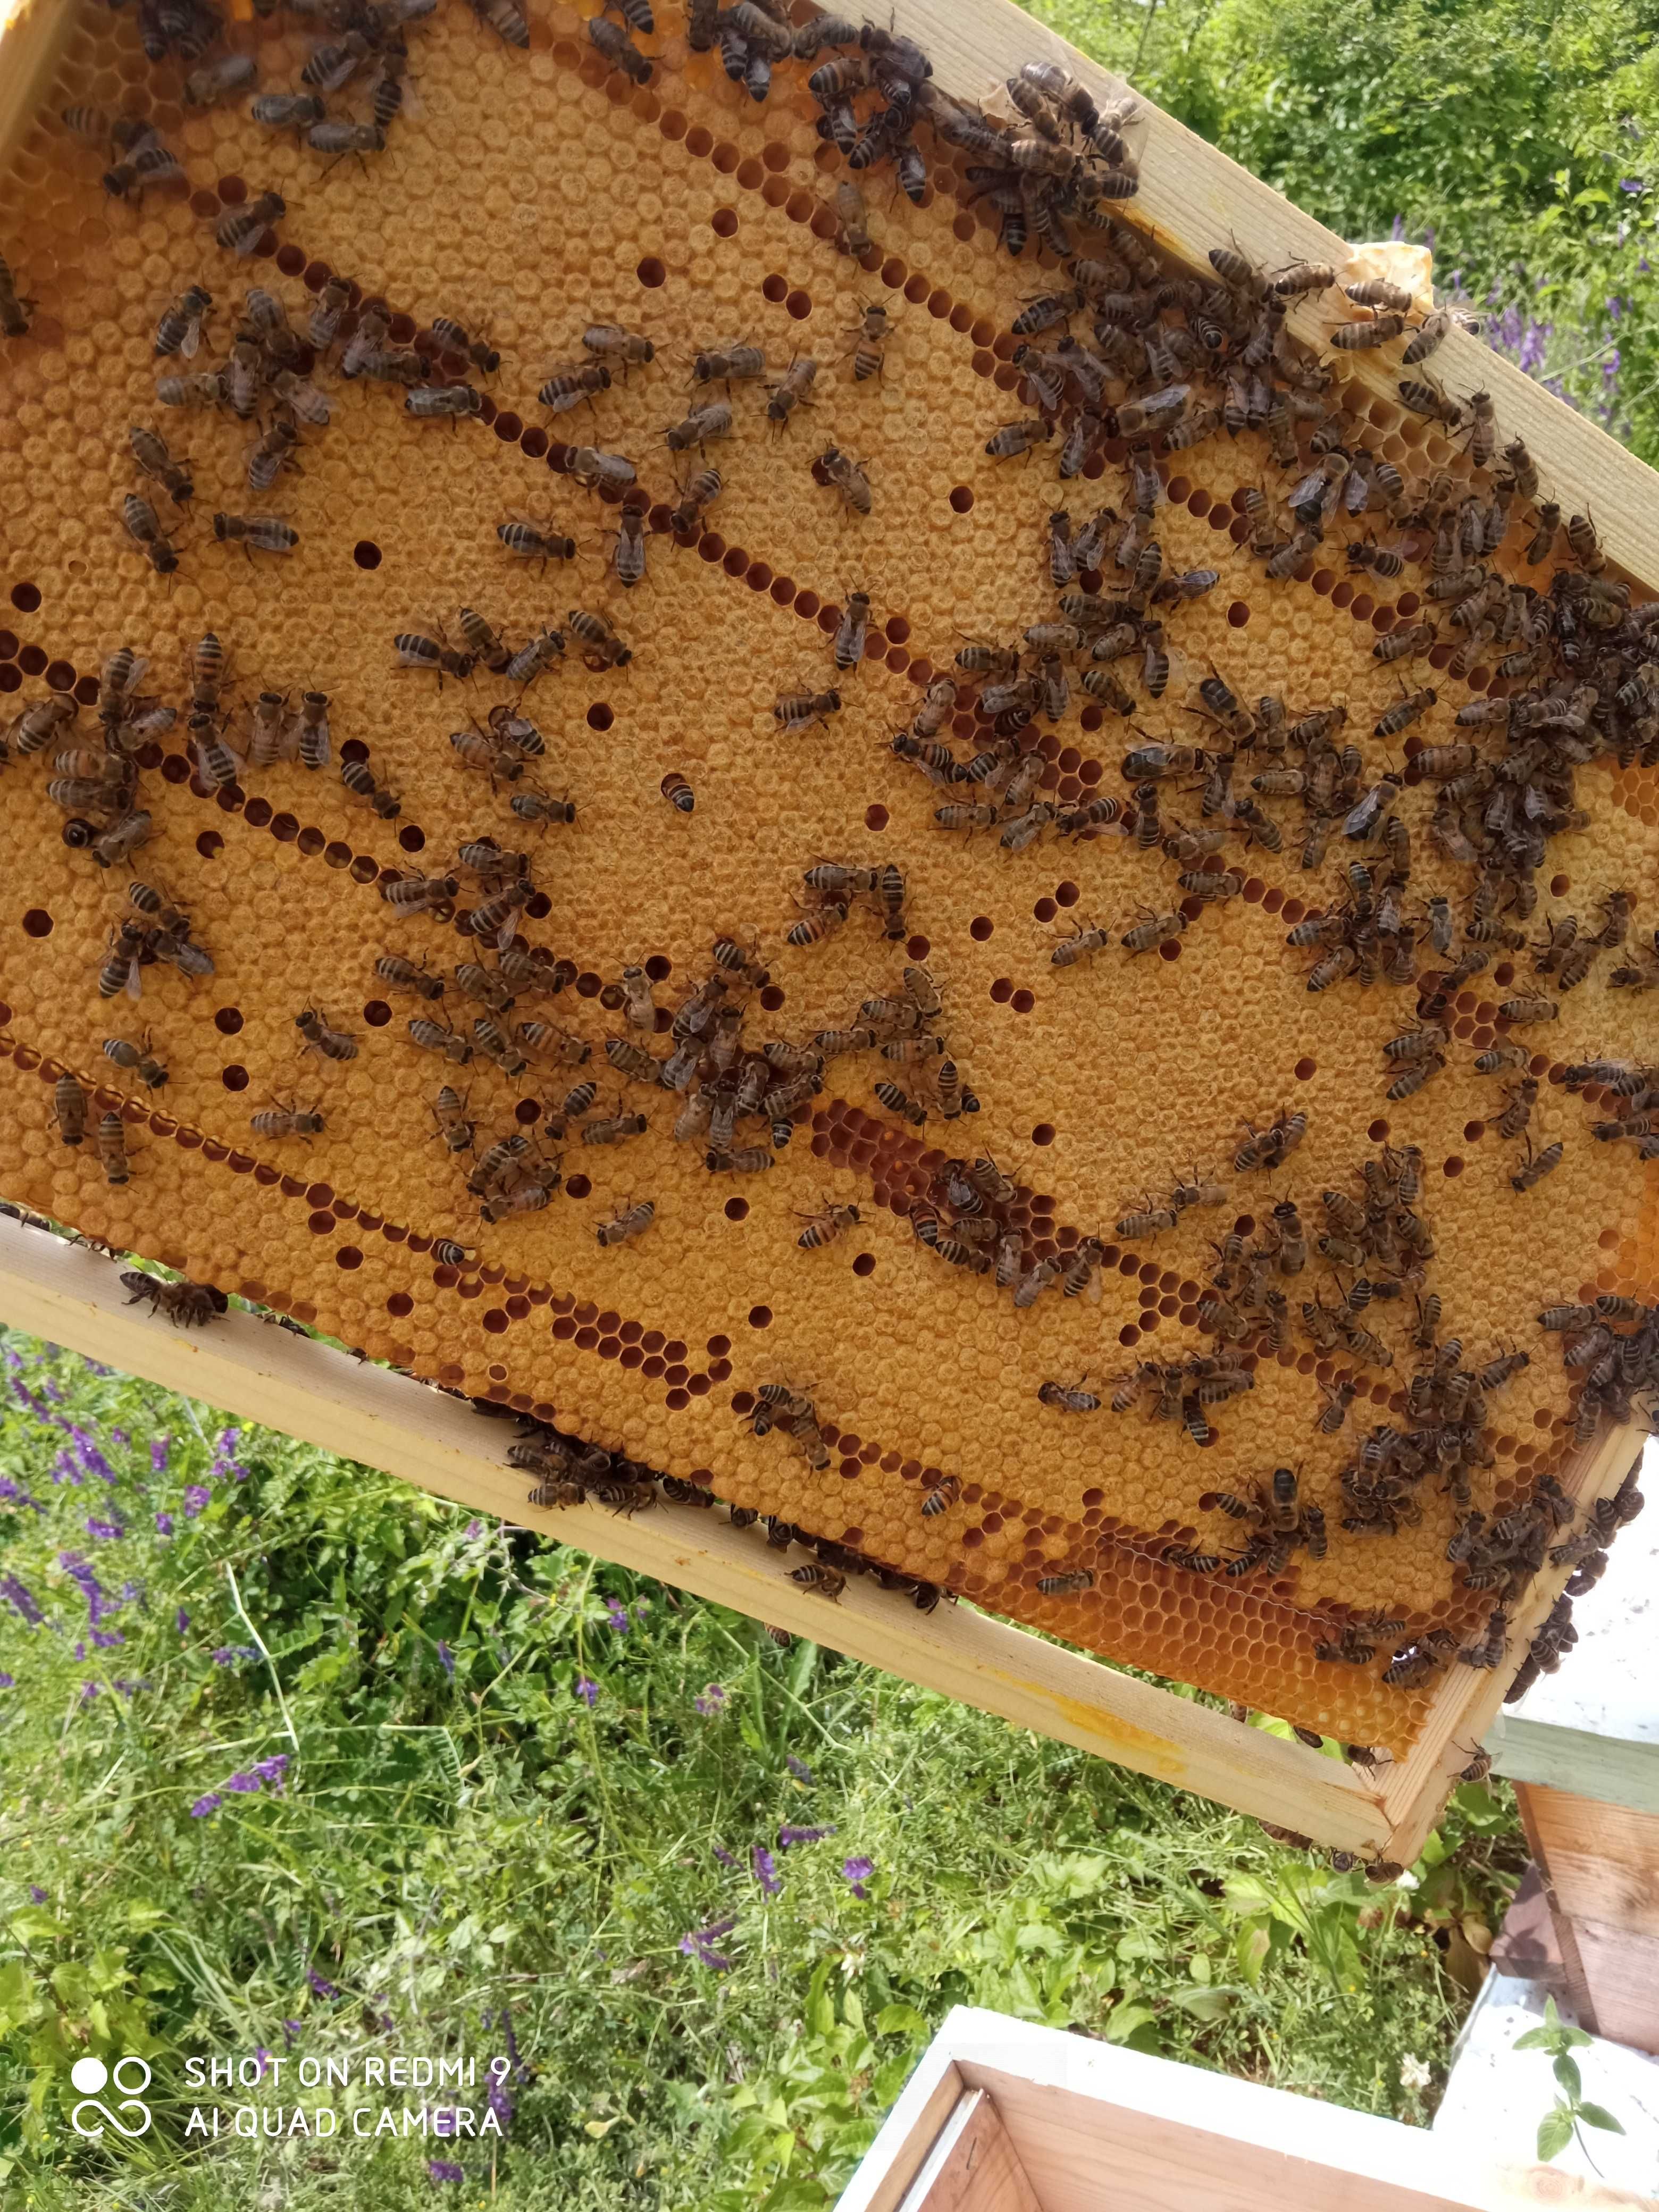 Пчелни отводки , малки пчелни семейства